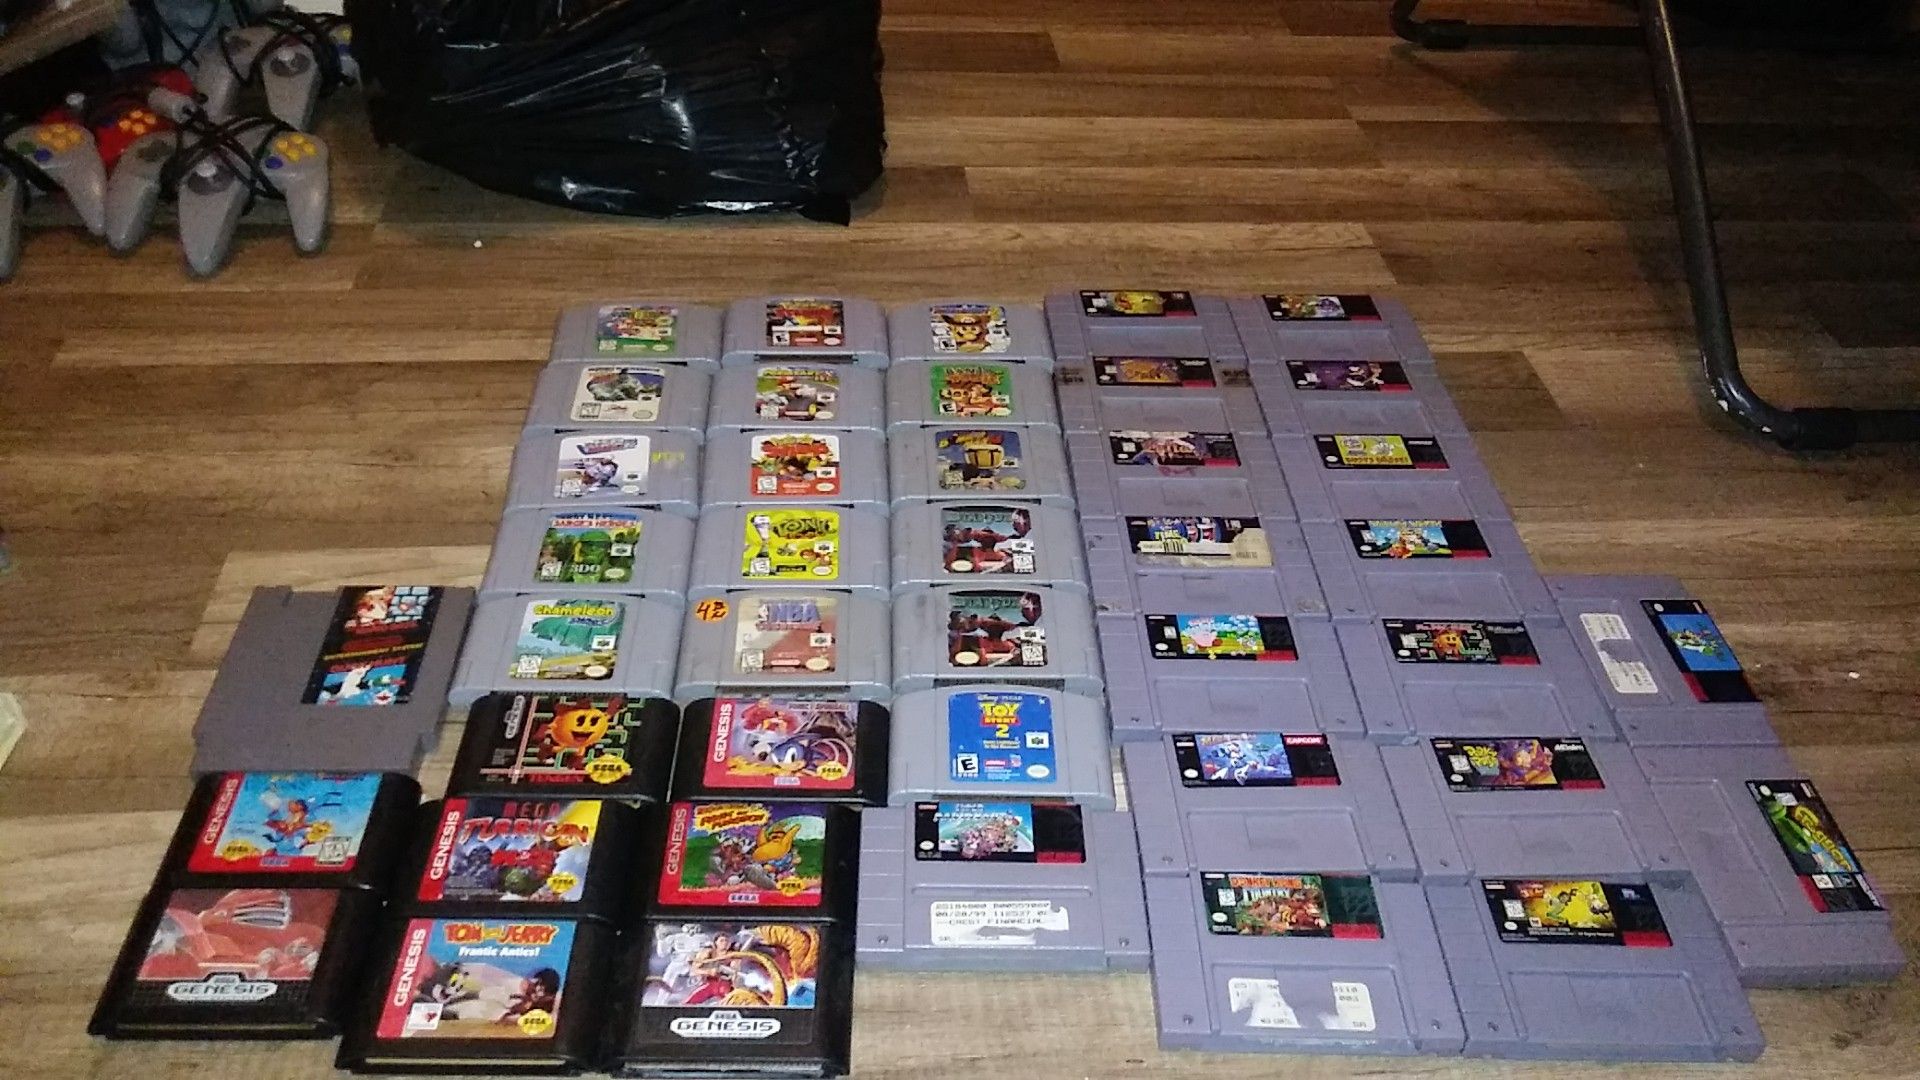 Nintendo 64 games, Sega genesis games, Super Nintendo games.